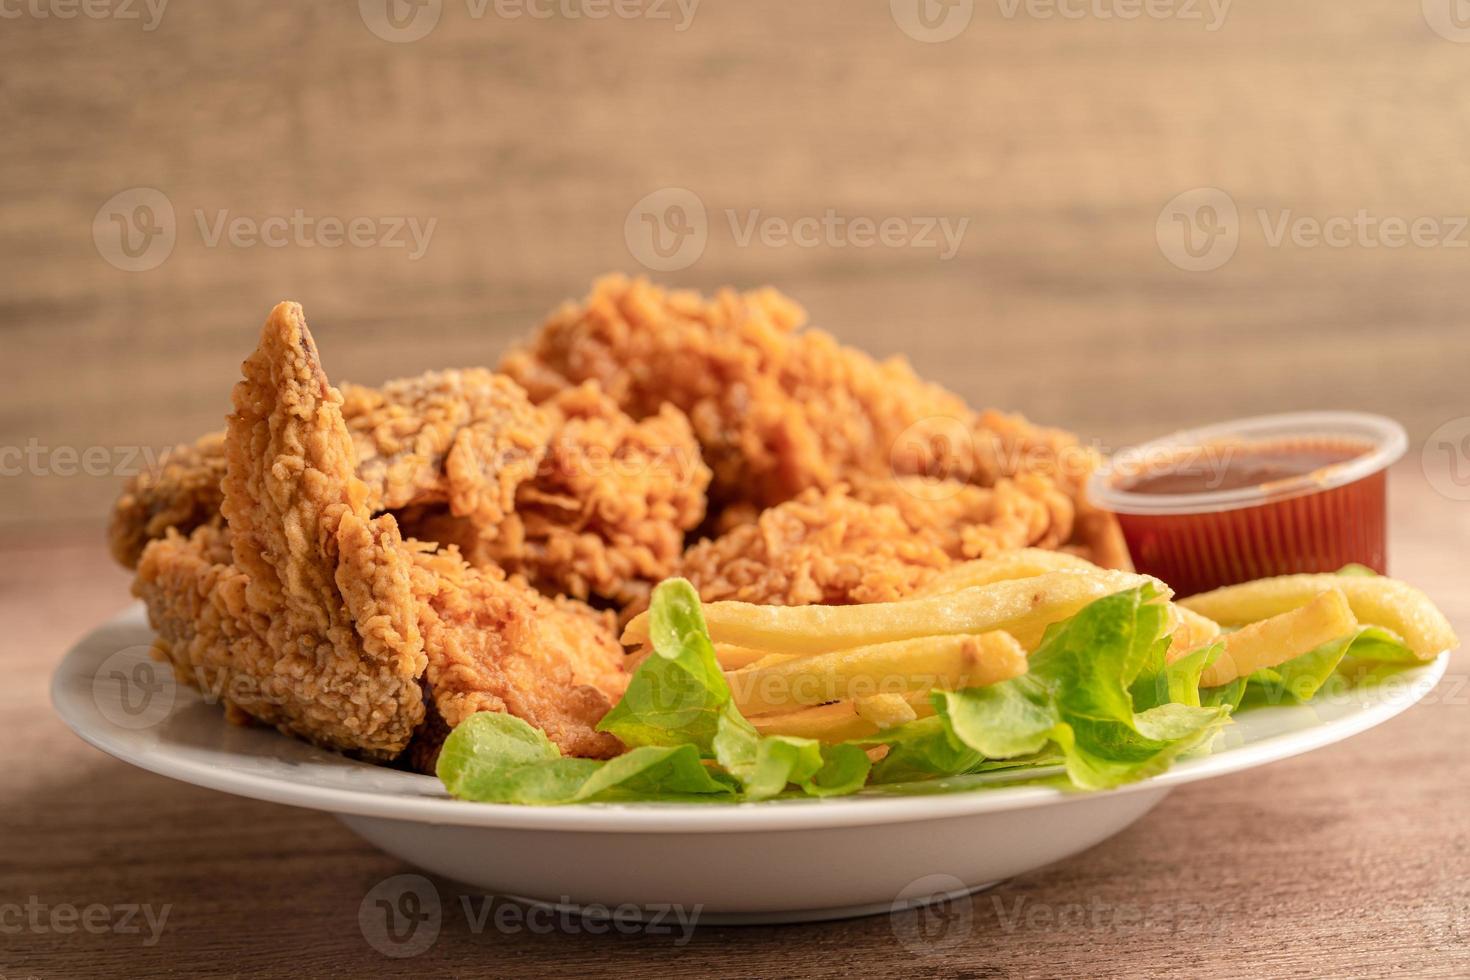 Pollo frito y papas fritas con hojas de romero, comida chatarra alta en calorías servida en un plato blanco foto